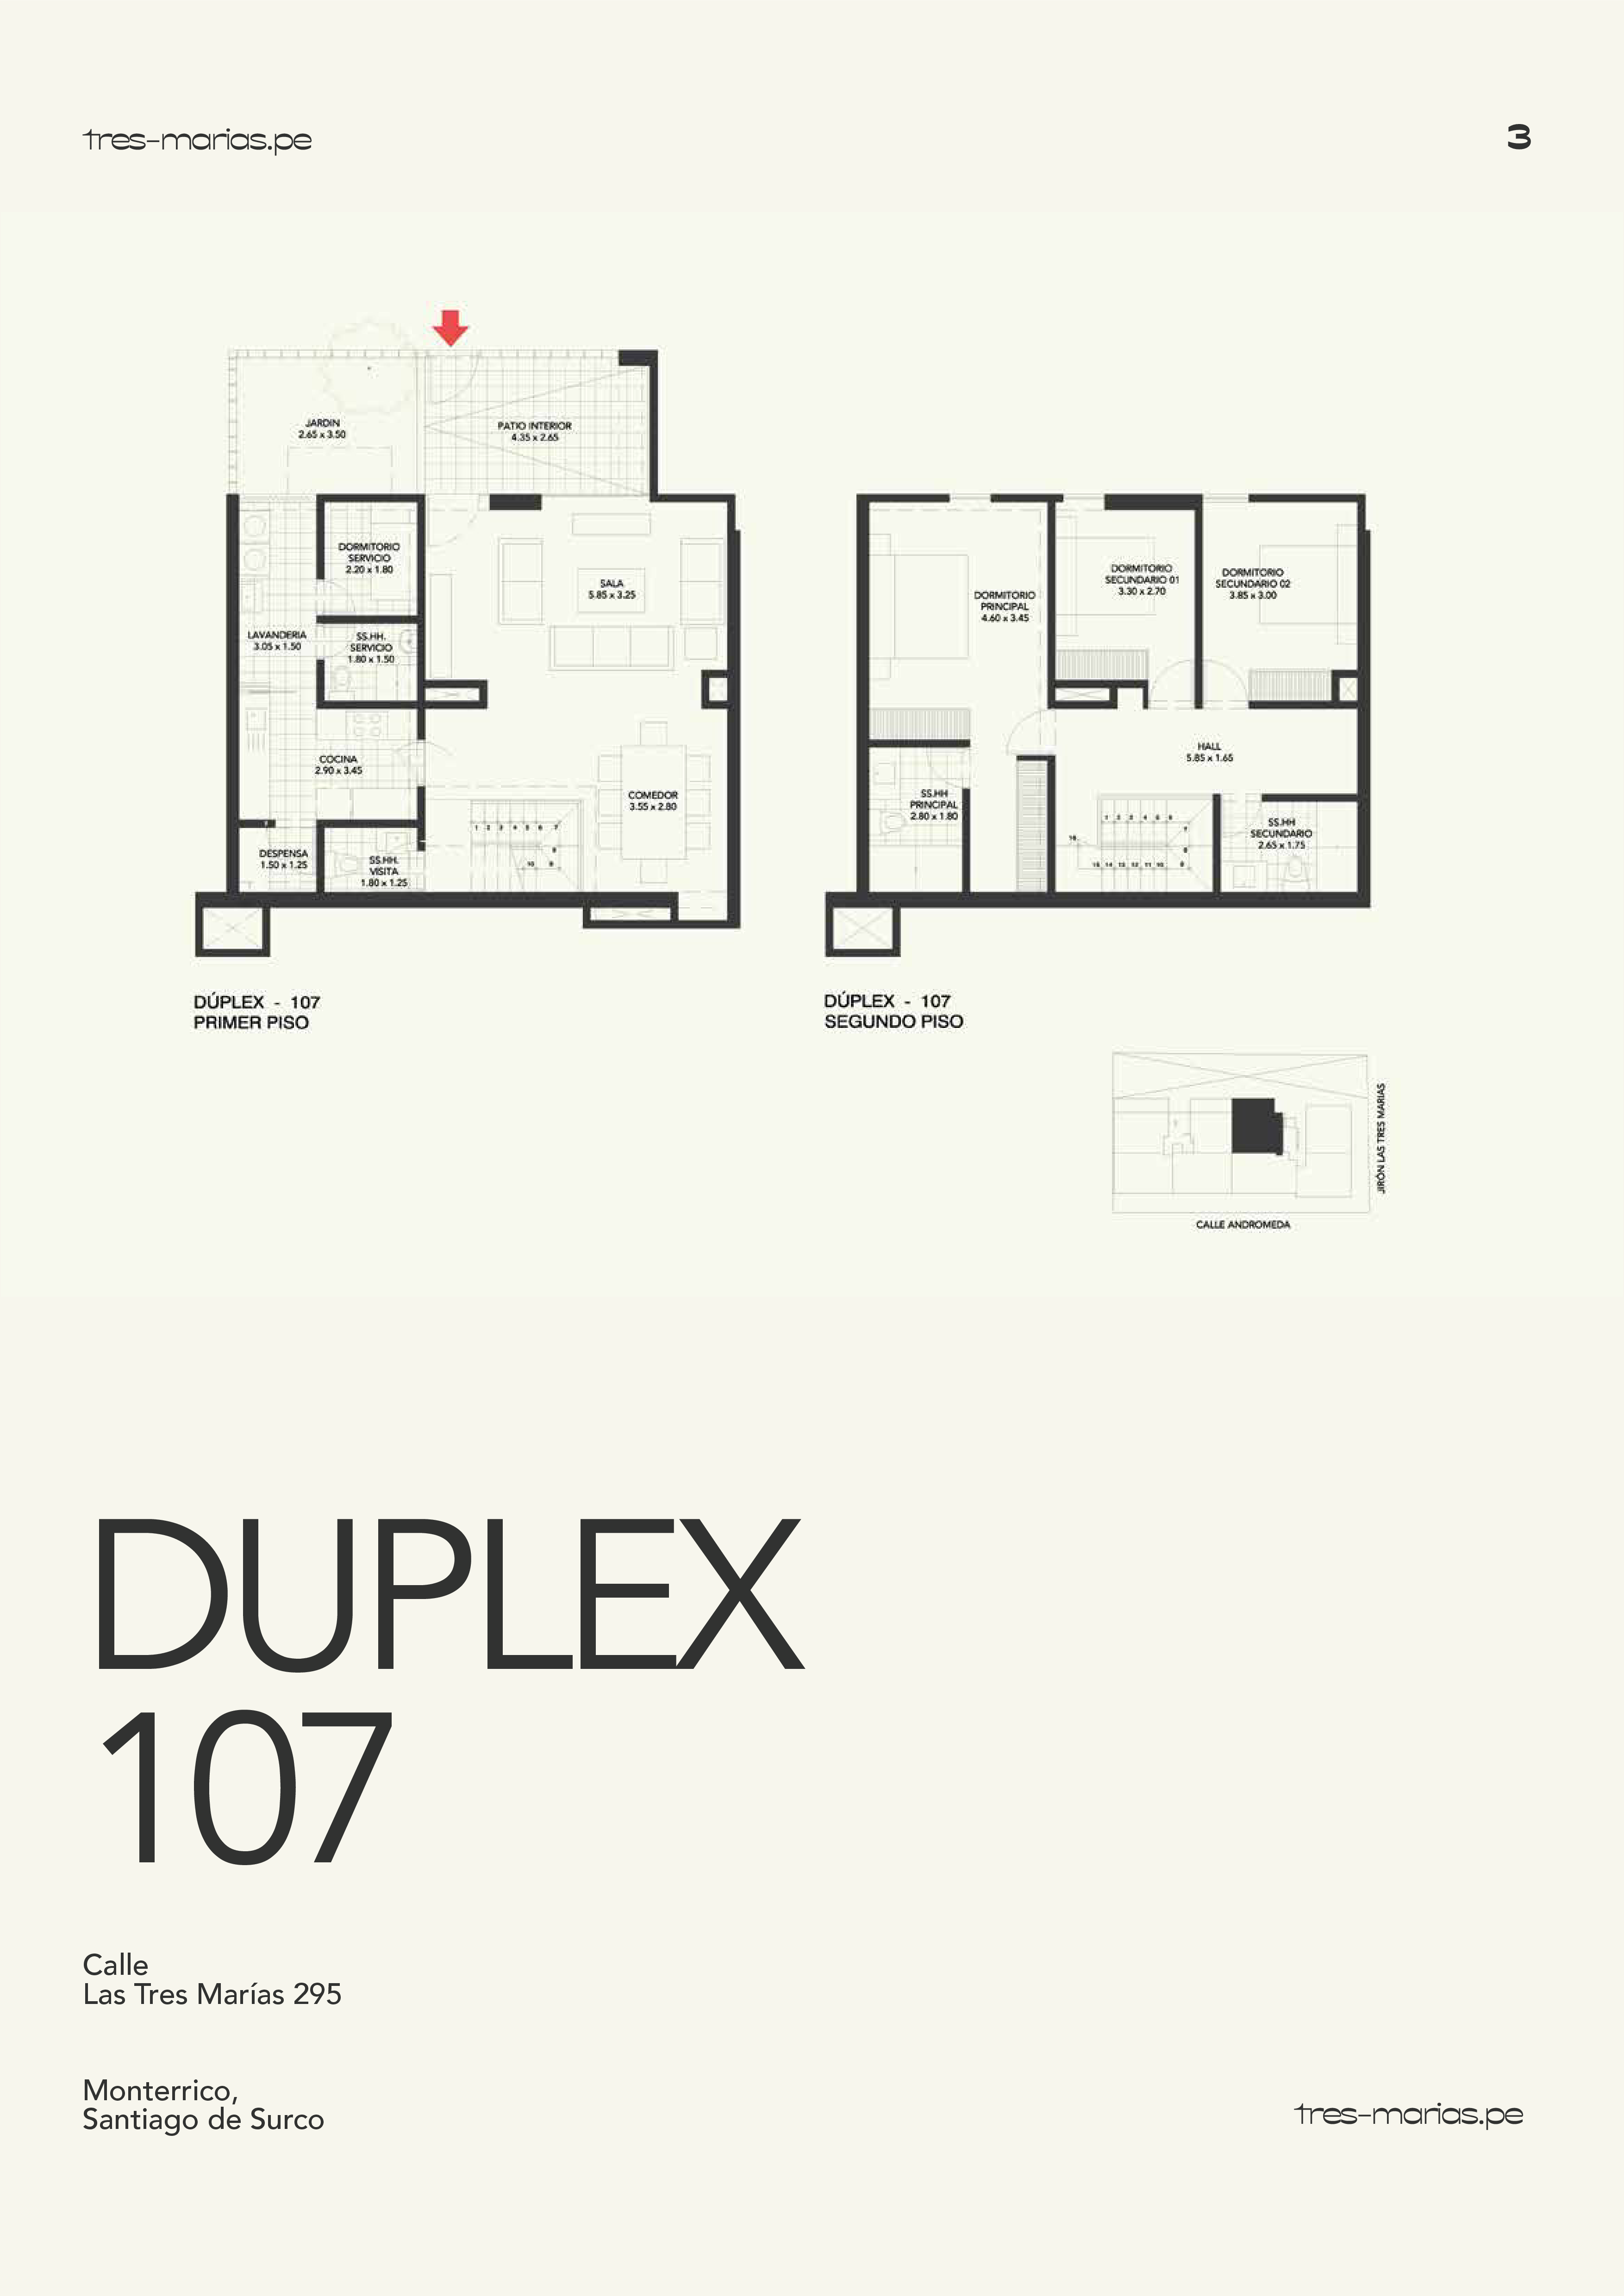 Duplex 107